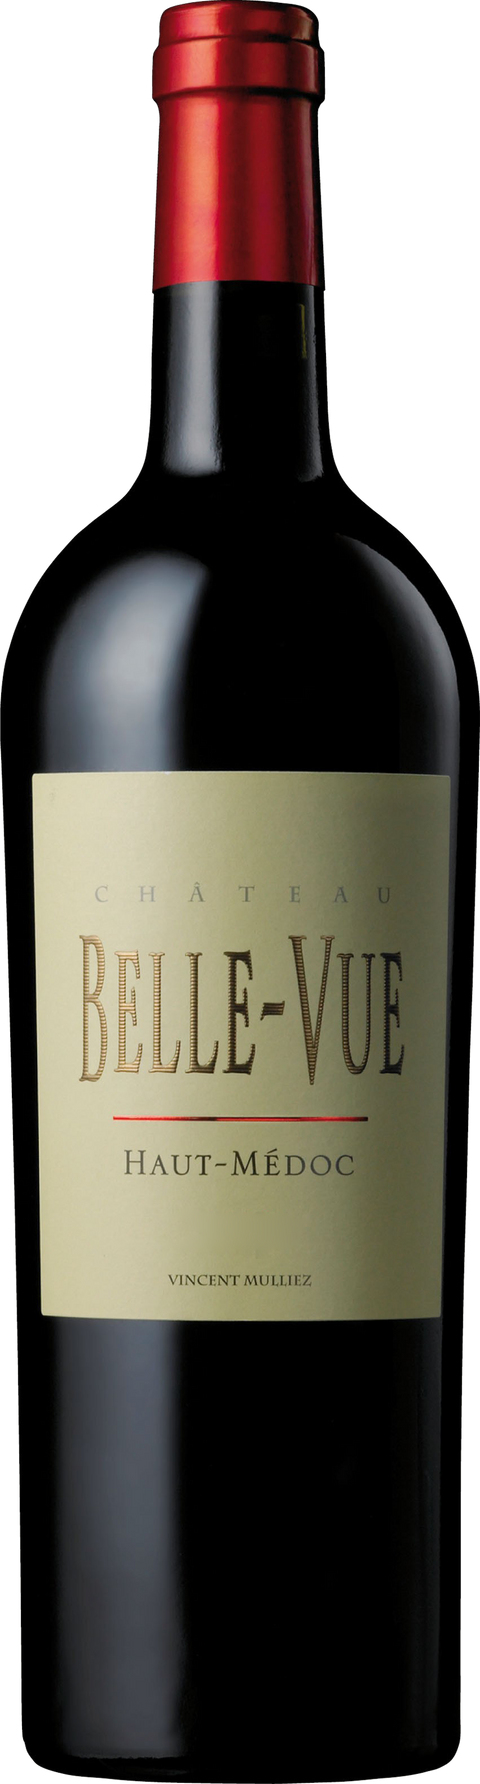 Chateau Belle-Vue---2013---Rouge---Château Belle-Vue---0.75